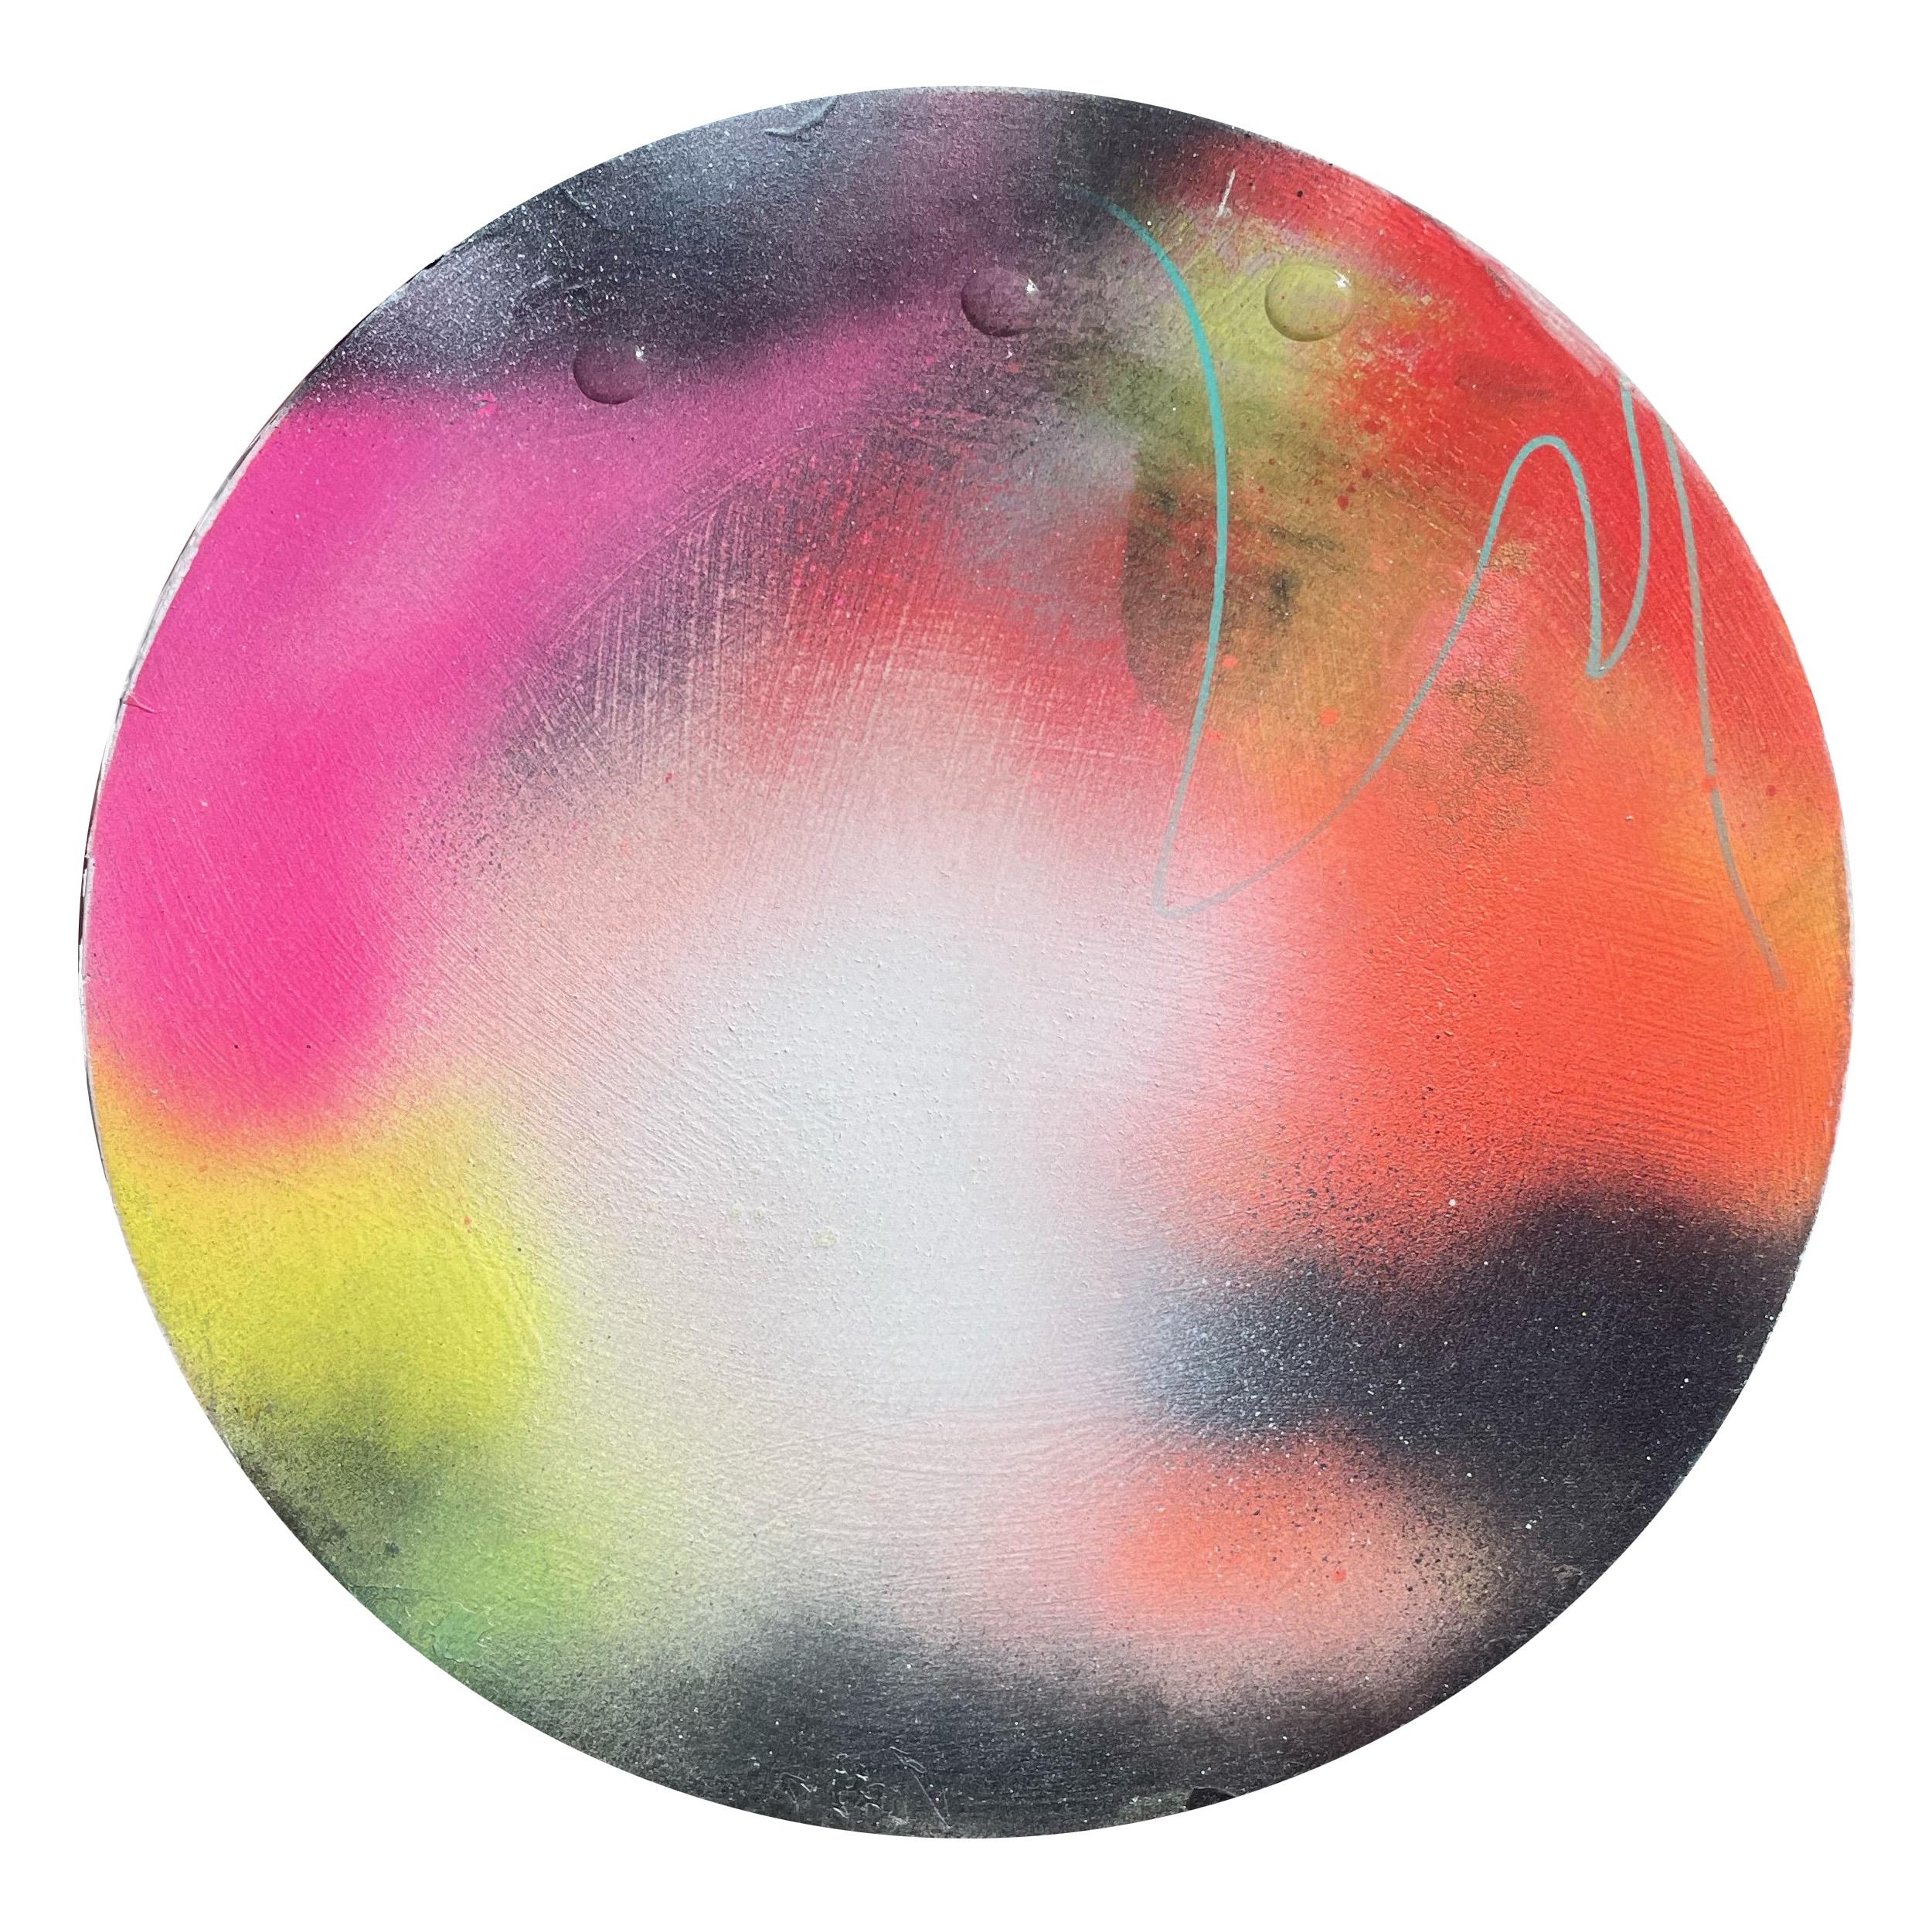 "Perlende Tautropfen 6" Zeitgenössische farbenfrohe abstrakte kreisförmige Malerei